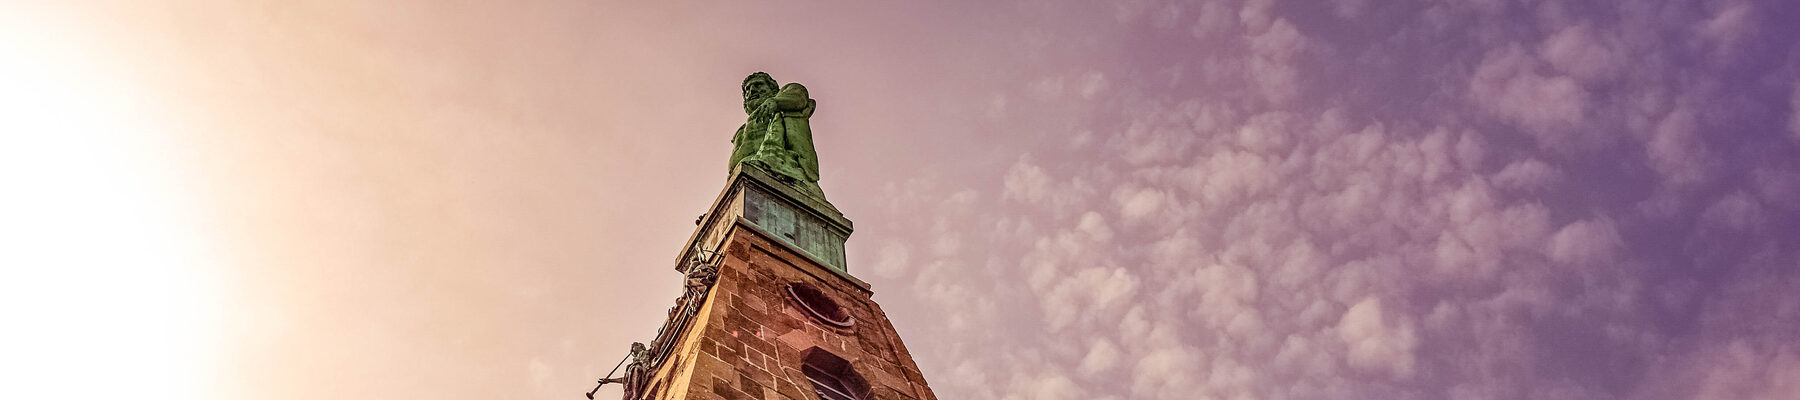 Herkules-Statue auf ihrem Podest in Kassel